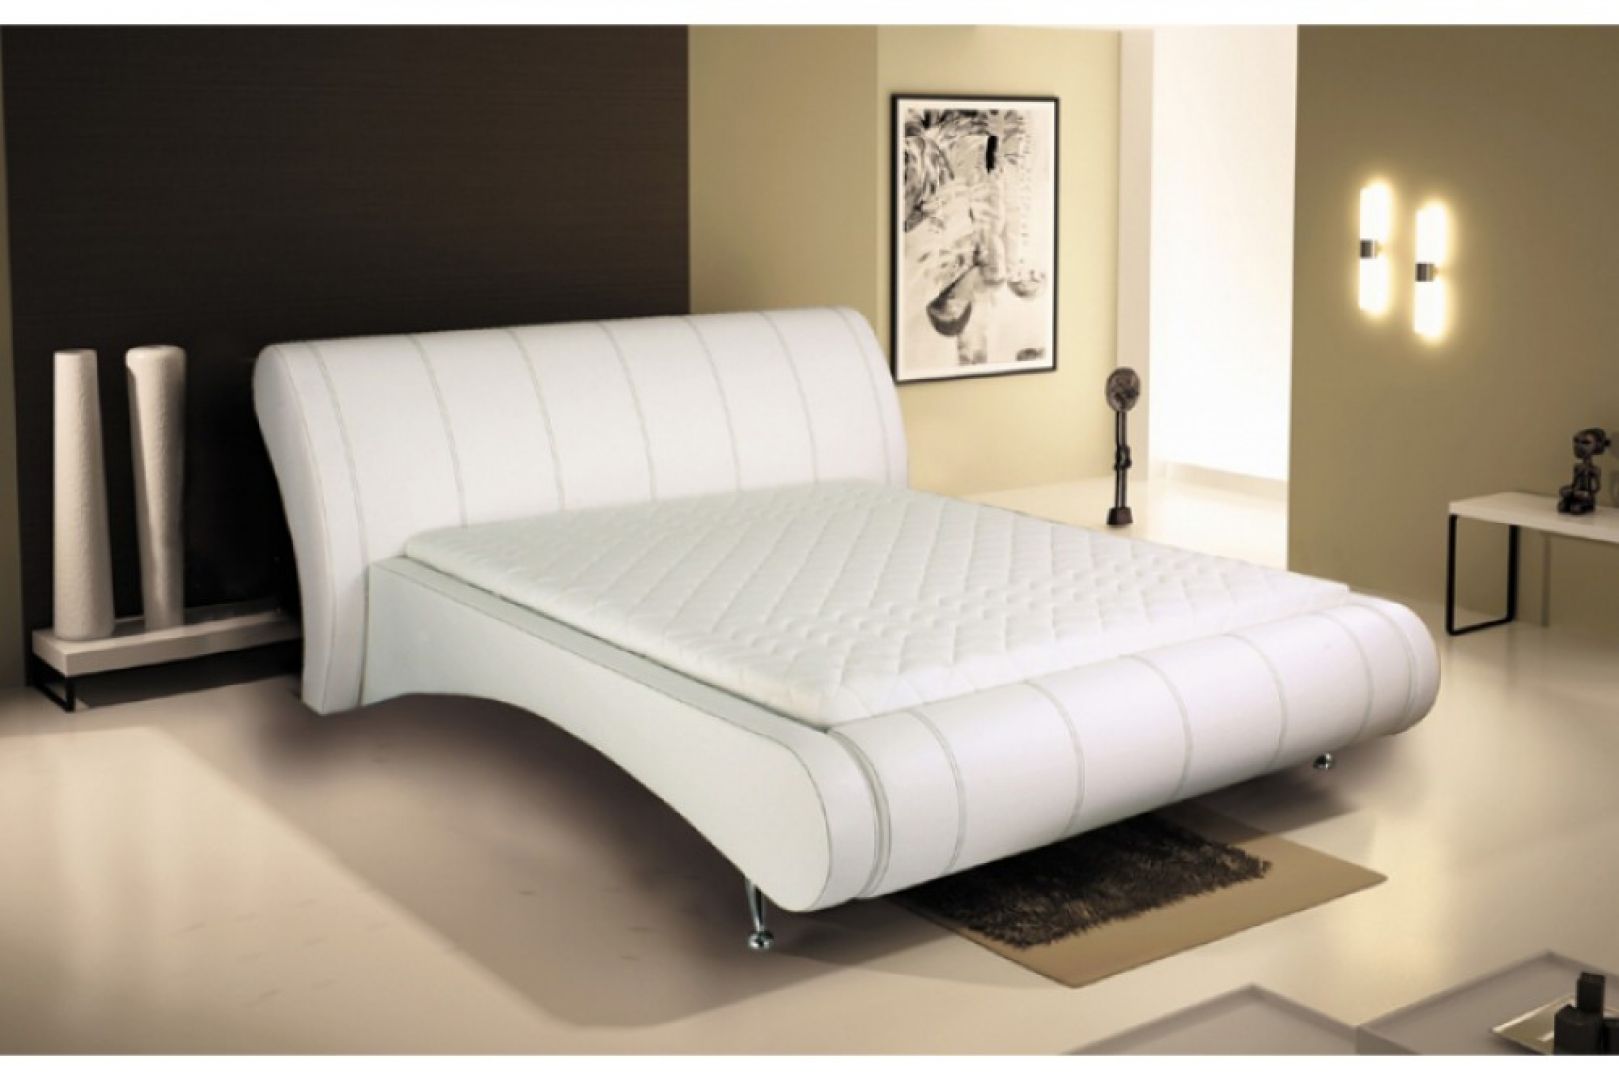 Łóżko tapicerowane 180 wyróżnia się opływową linią. Oparte jest na wysokich nóżkach, dzięki temu prezentuje się lekko wizualnie. Cena: 2.100 zł. Fot. MK Foam